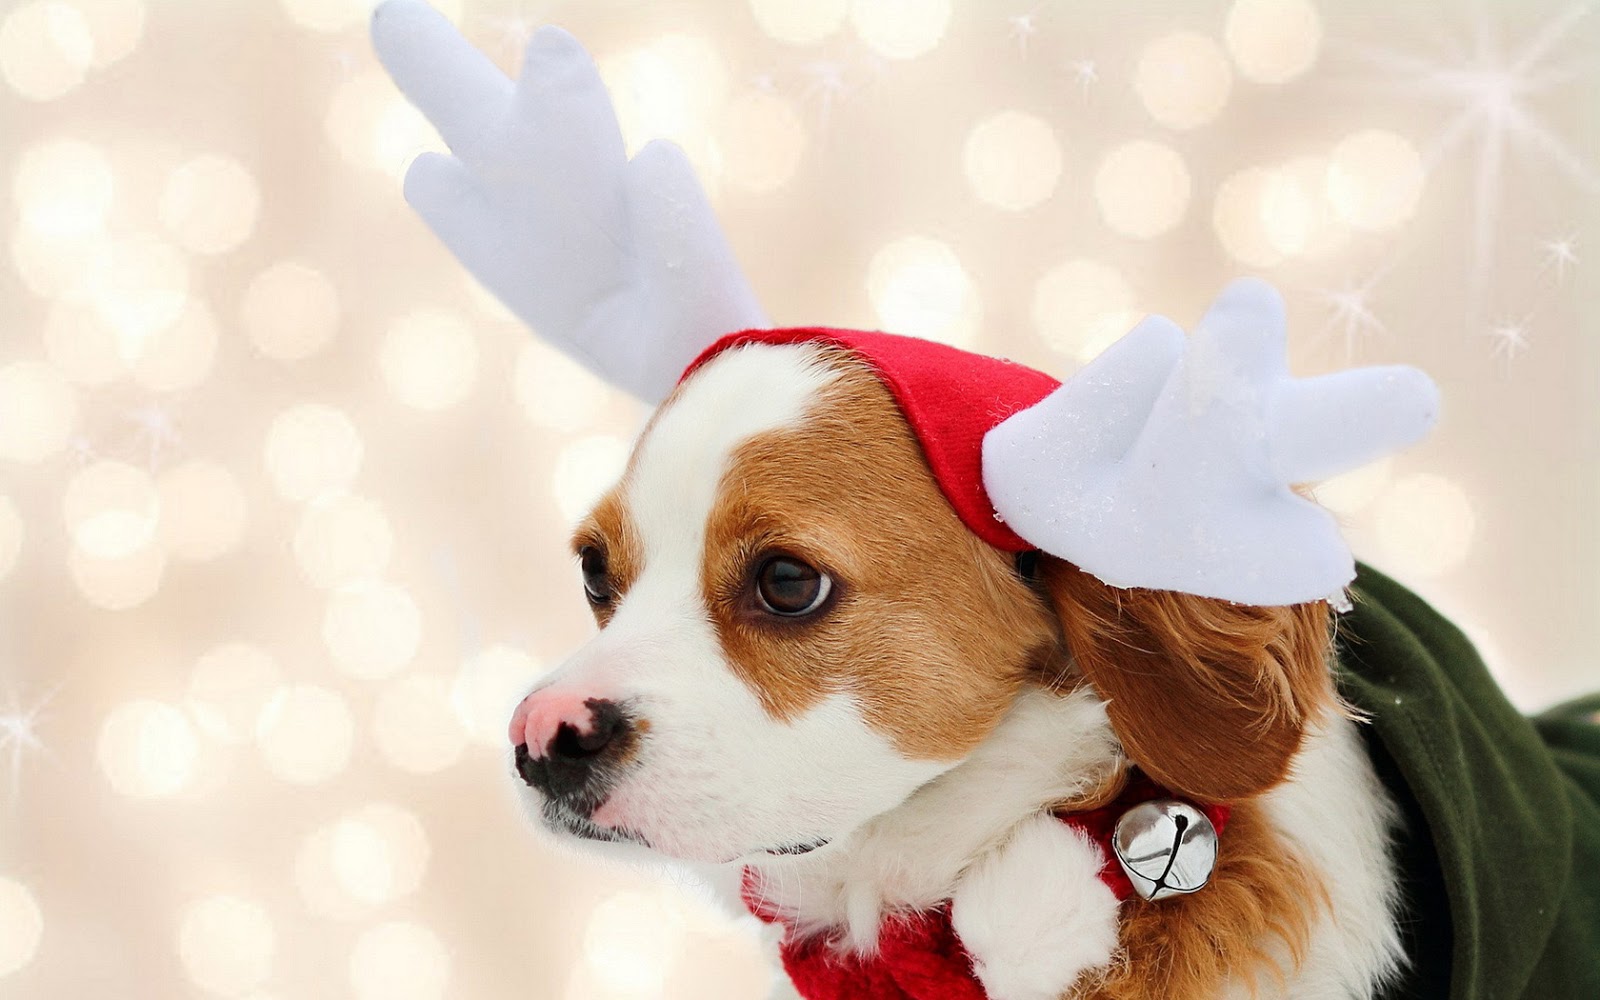 http://4.bp.blogspot.com/-T3vUF8NVHEg/UNDbRSc618I/AAAAAAAAI_M/atkU_MKV1f4/s1600/wallpaper-of-a-cute-christmas-dog-at-christmas-time.jpg